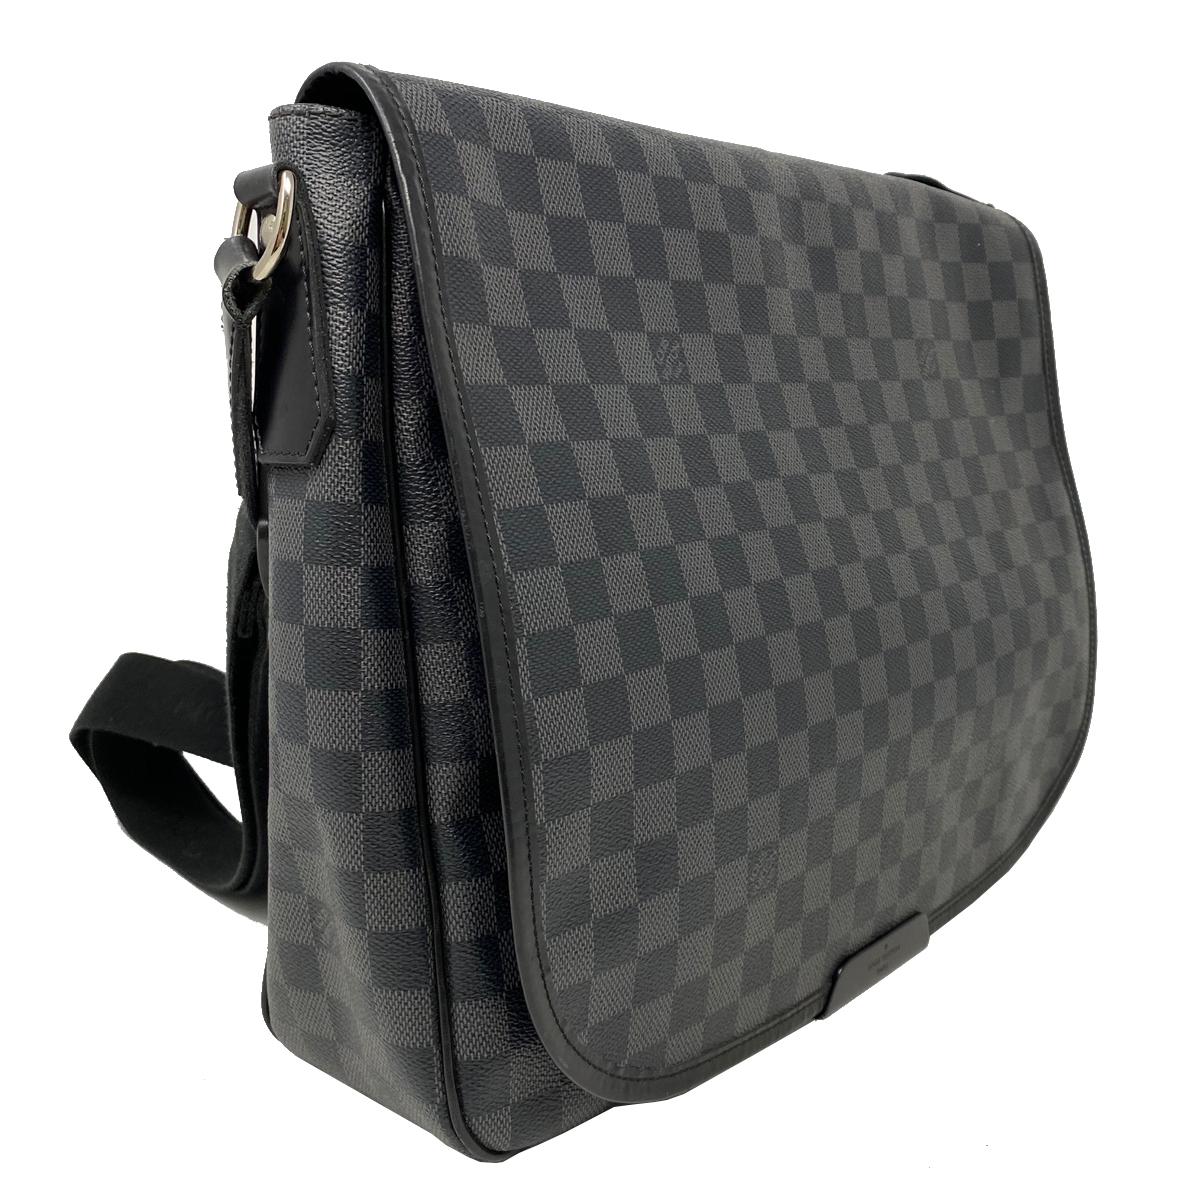 Company-Louis Vuitton
Model-Damier Graphite District GM Messenger Bag 
Color-Black 
Date Code-SP2018
Material-Damier Graphite Leather Canvas
Measurements-33.5 